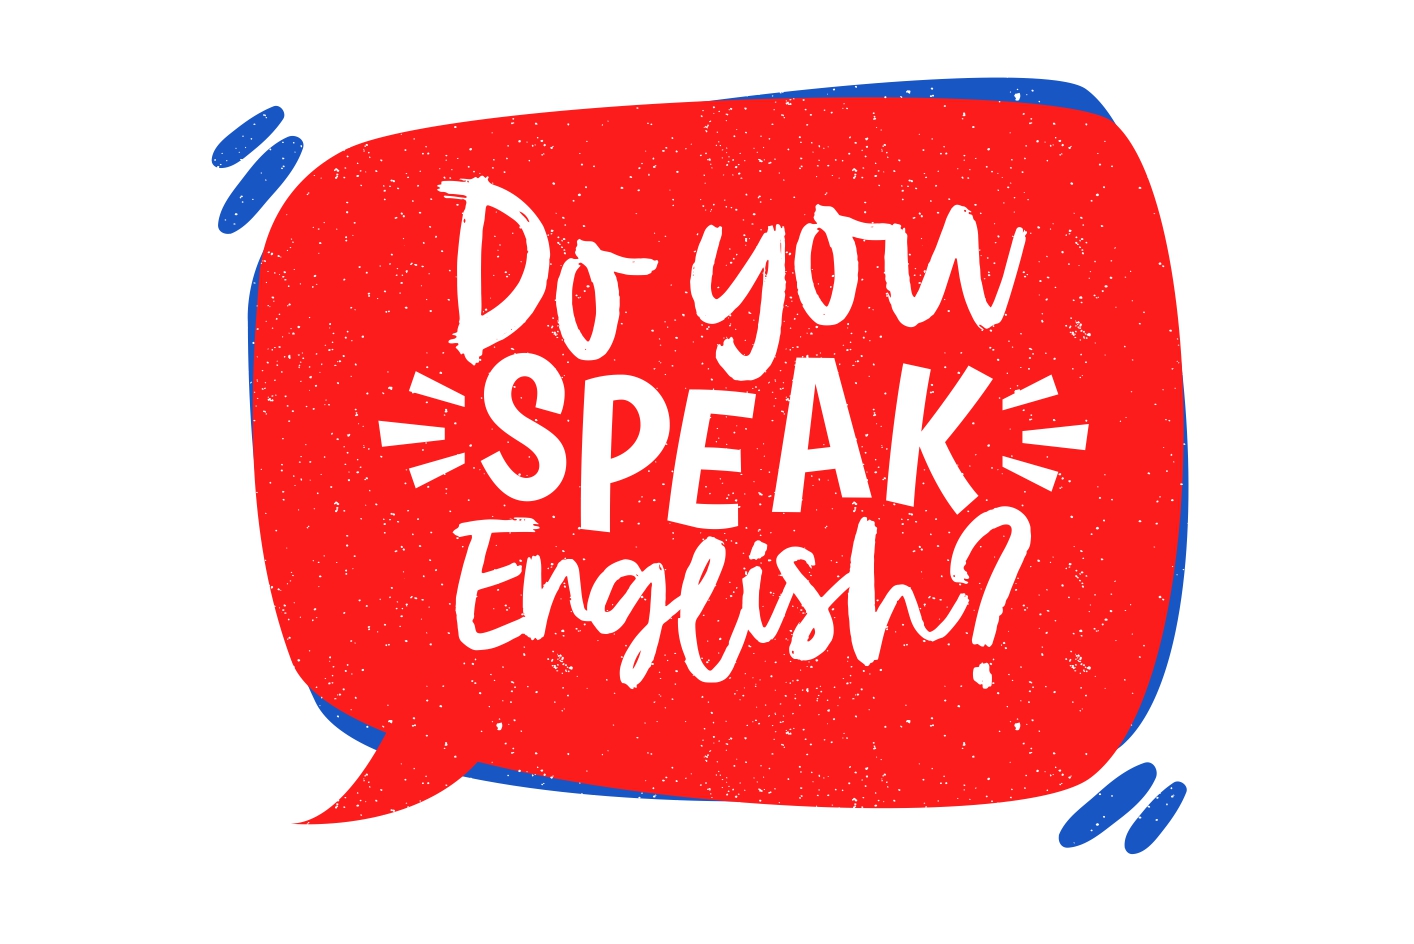 Imagem perguntando se a pessoa fala inglês.